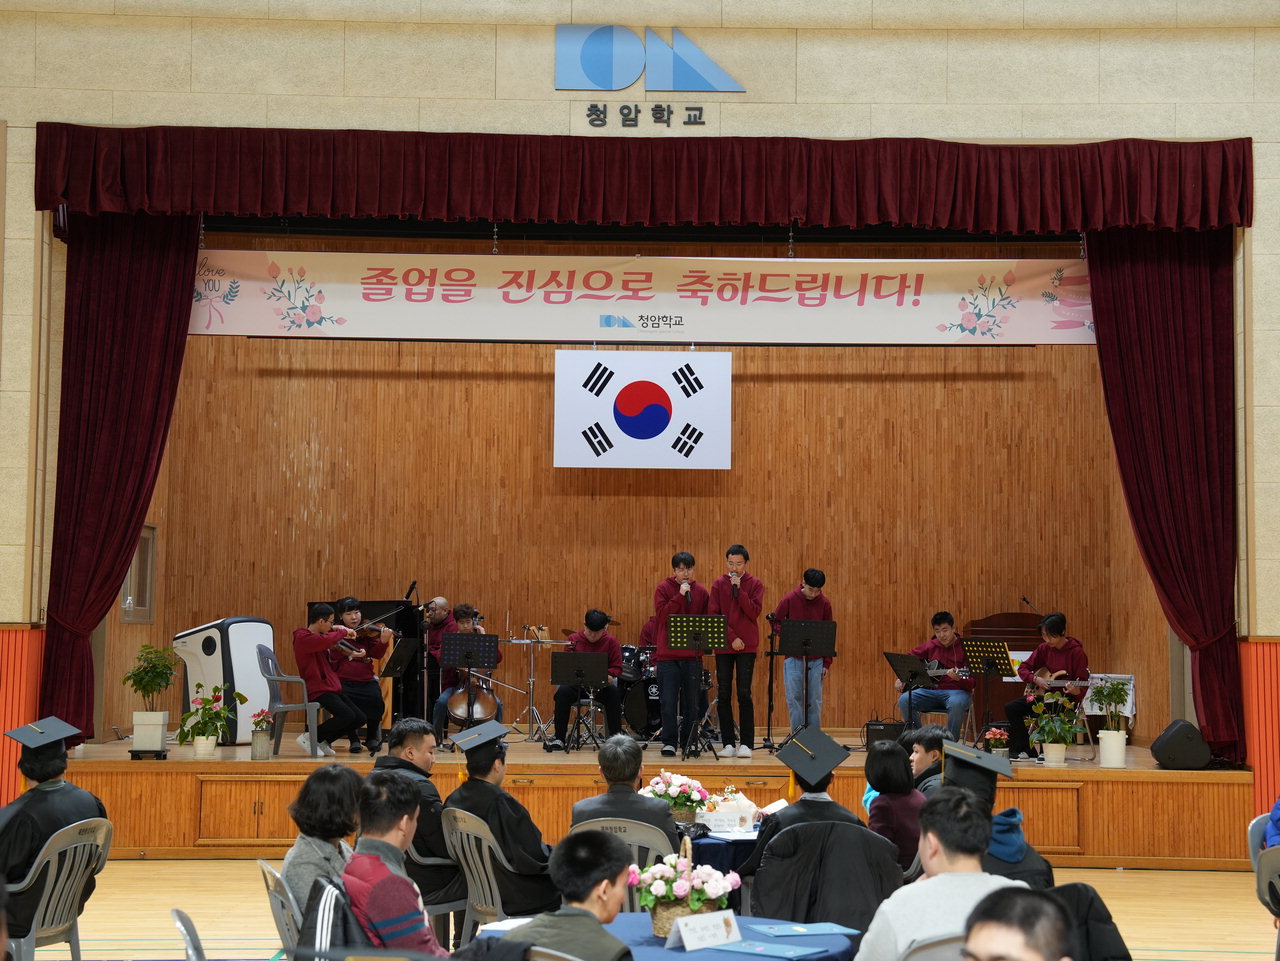 제천 지적장애 특수학교 청암학교 졸업식이 10일 열렸다. 청암 오케스트라가 멋진 공연을 선사하고 있다.